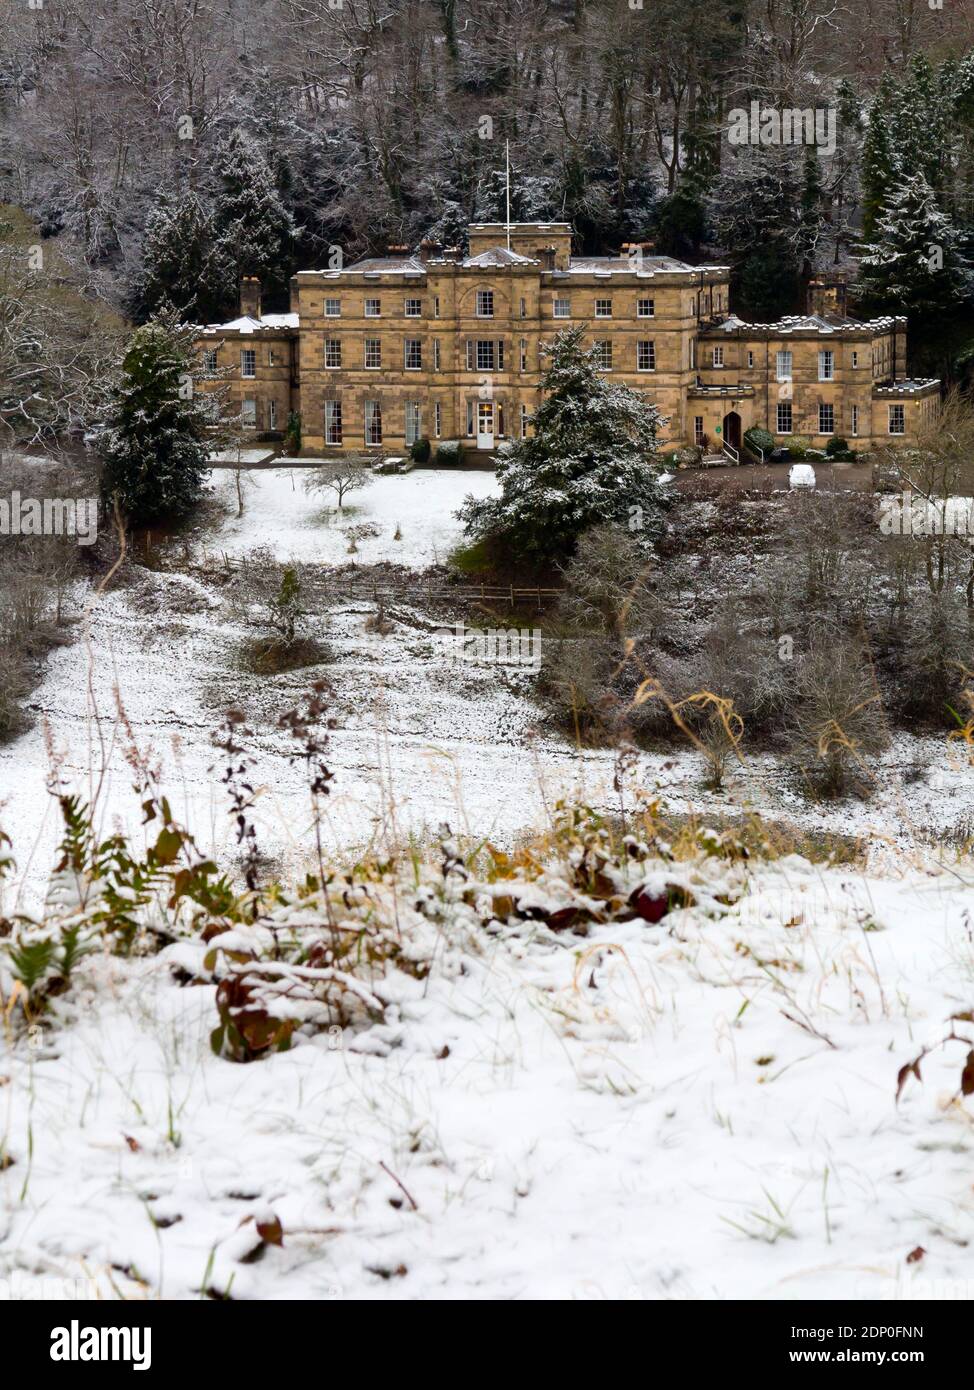 Vue d'hiver avec la neige du château de Willersley à Cromford Derbyshire Peak District Angleterre Royaume-Uni construit pour Sir Richard Arkwright à la fin du XVIIIe siècle. Banque D'Images